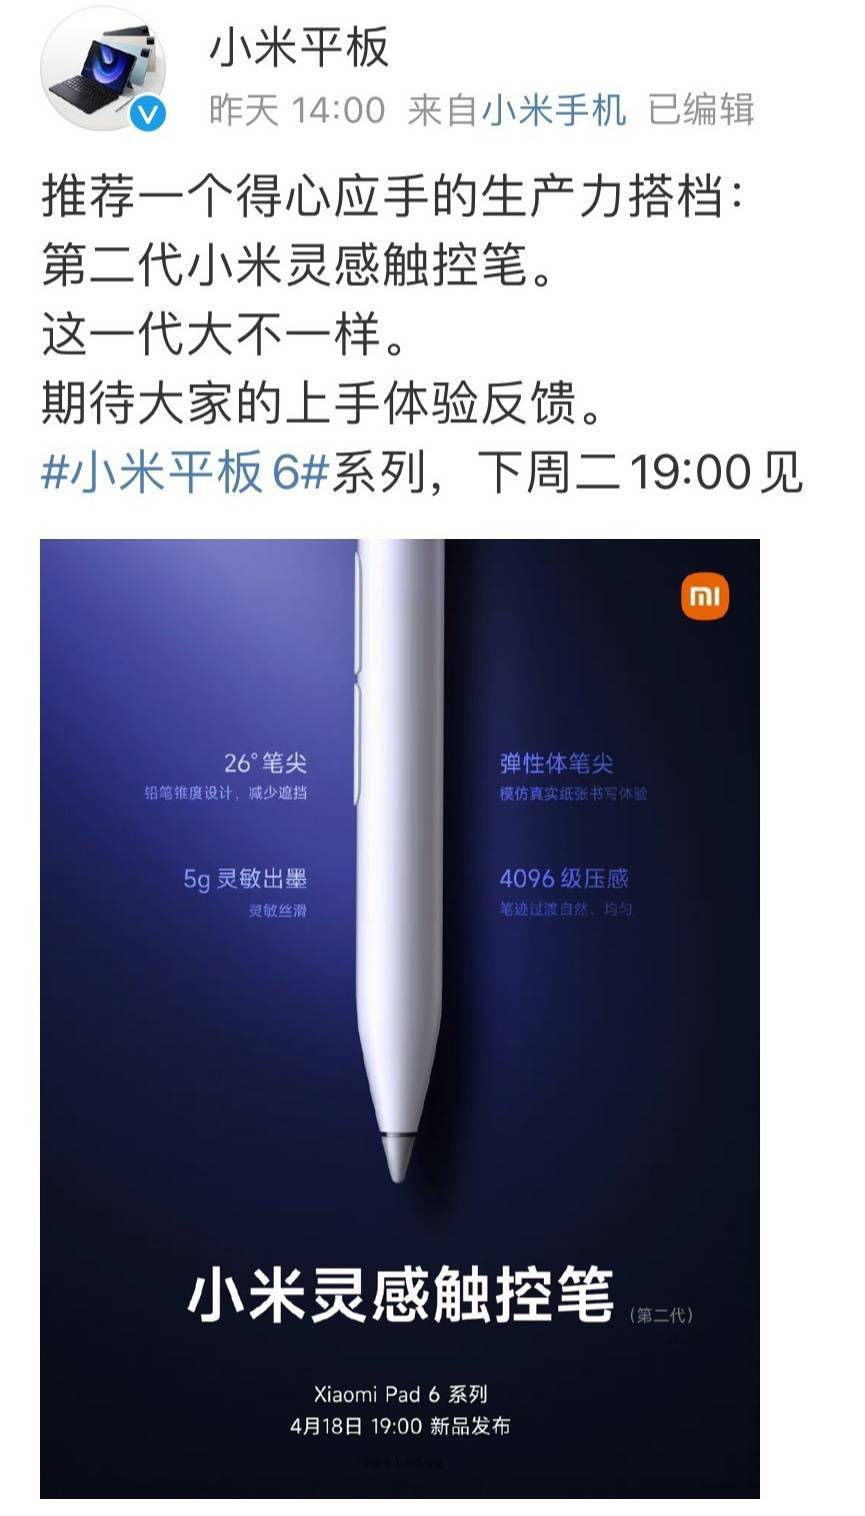 小米灵感触控笔第二代官宣4月18日发布：采用铅笔锥度设计 支持4096级压感